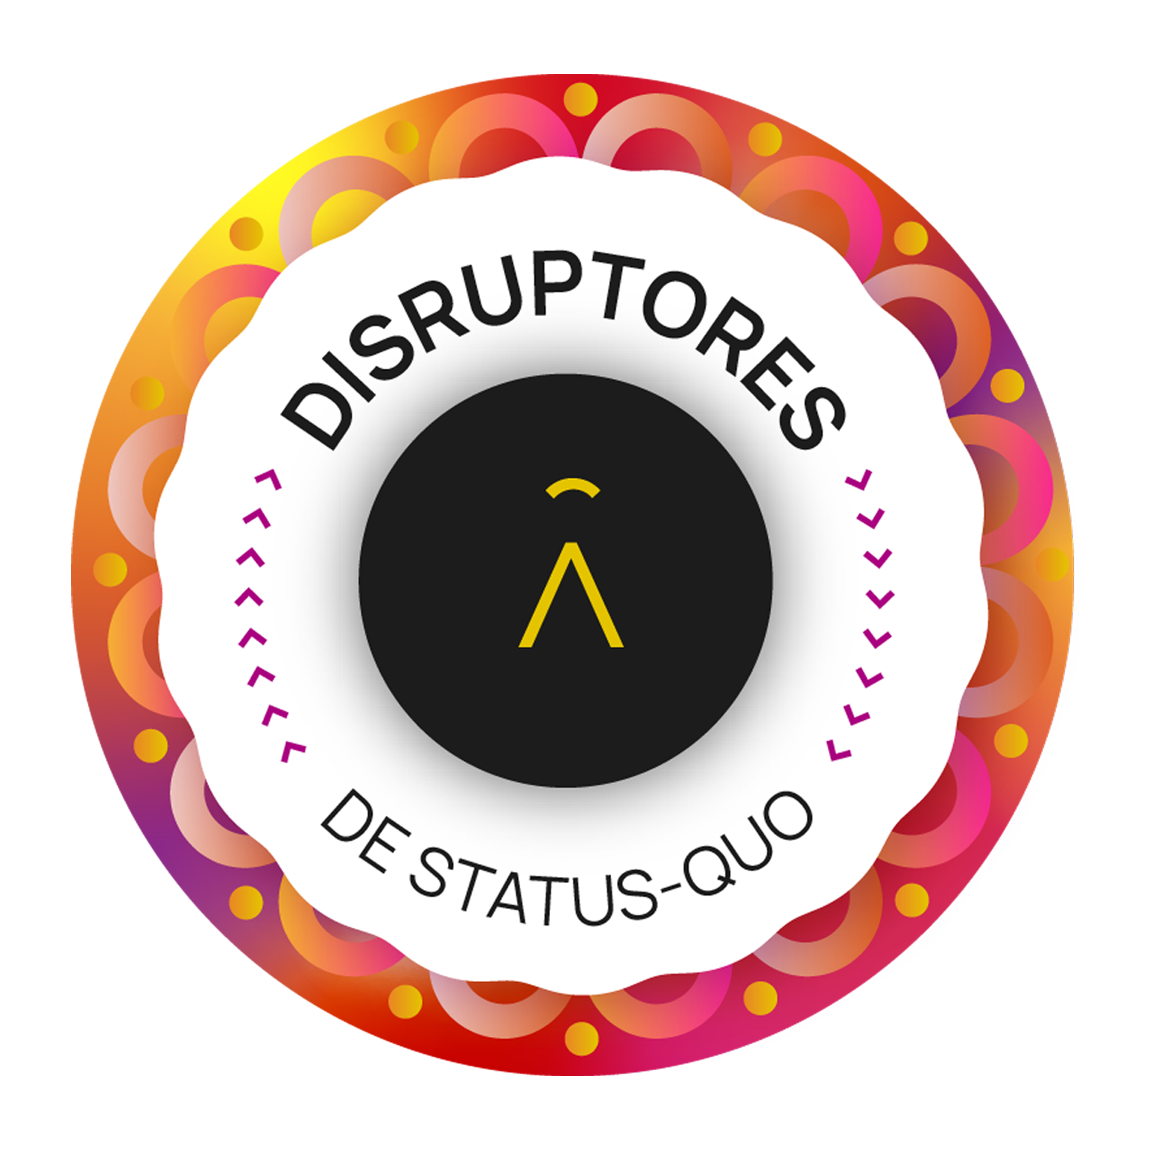 Disruptores de Status-Quo